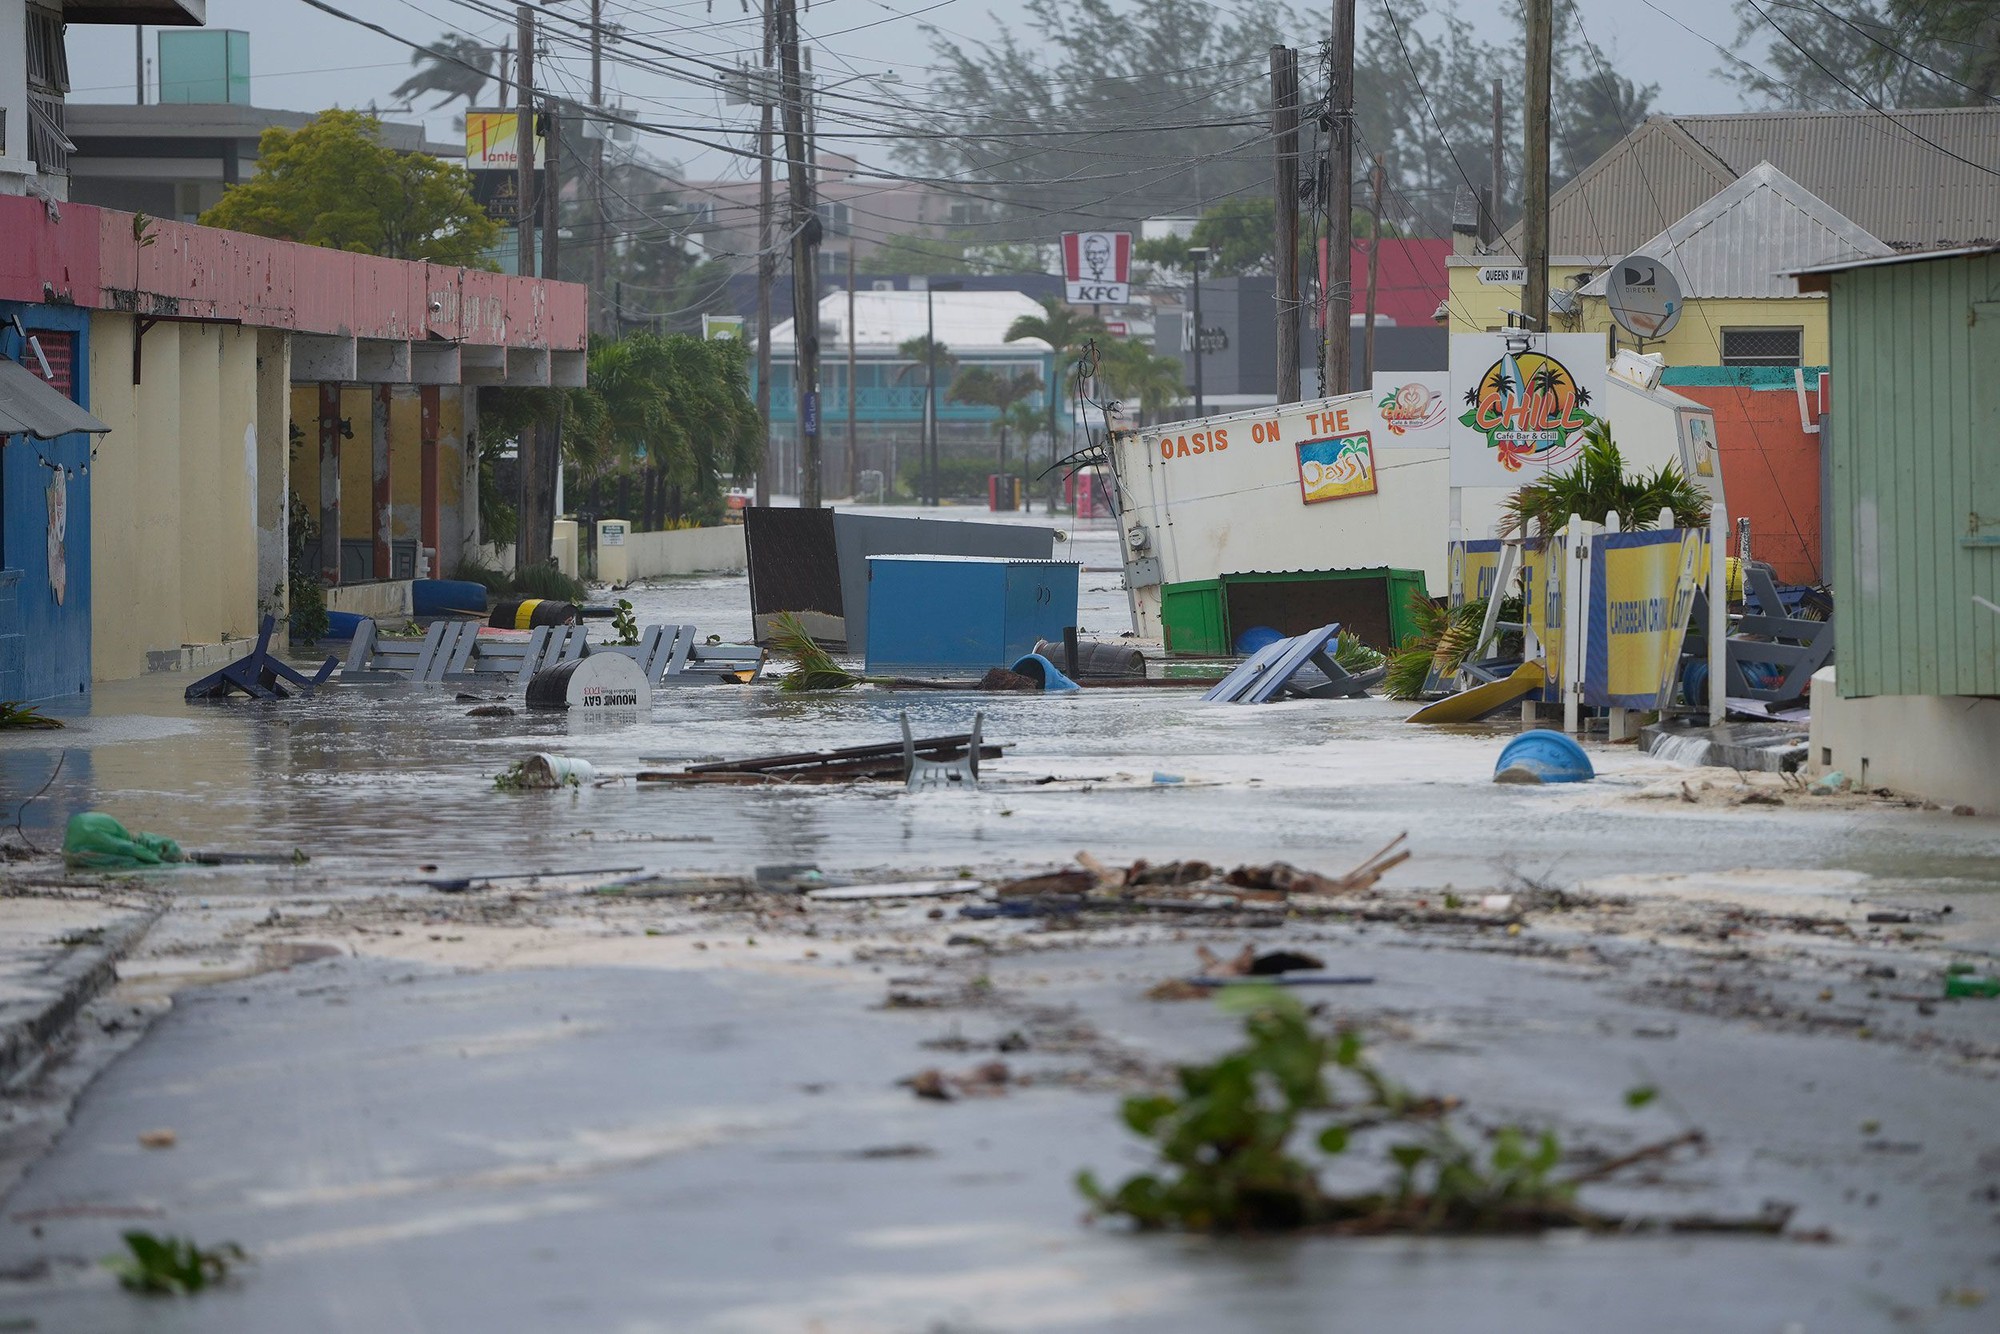 Siêu bão lịch sử “cực kỳ nguy hiểm” đổ bộ: San phẳng cả hòn đảo trong nửa giờ, gây mất điện toàn quốc, chính phủ nhiều nước ban bố cảnh báo khẩn cấp- Ảnh 3.